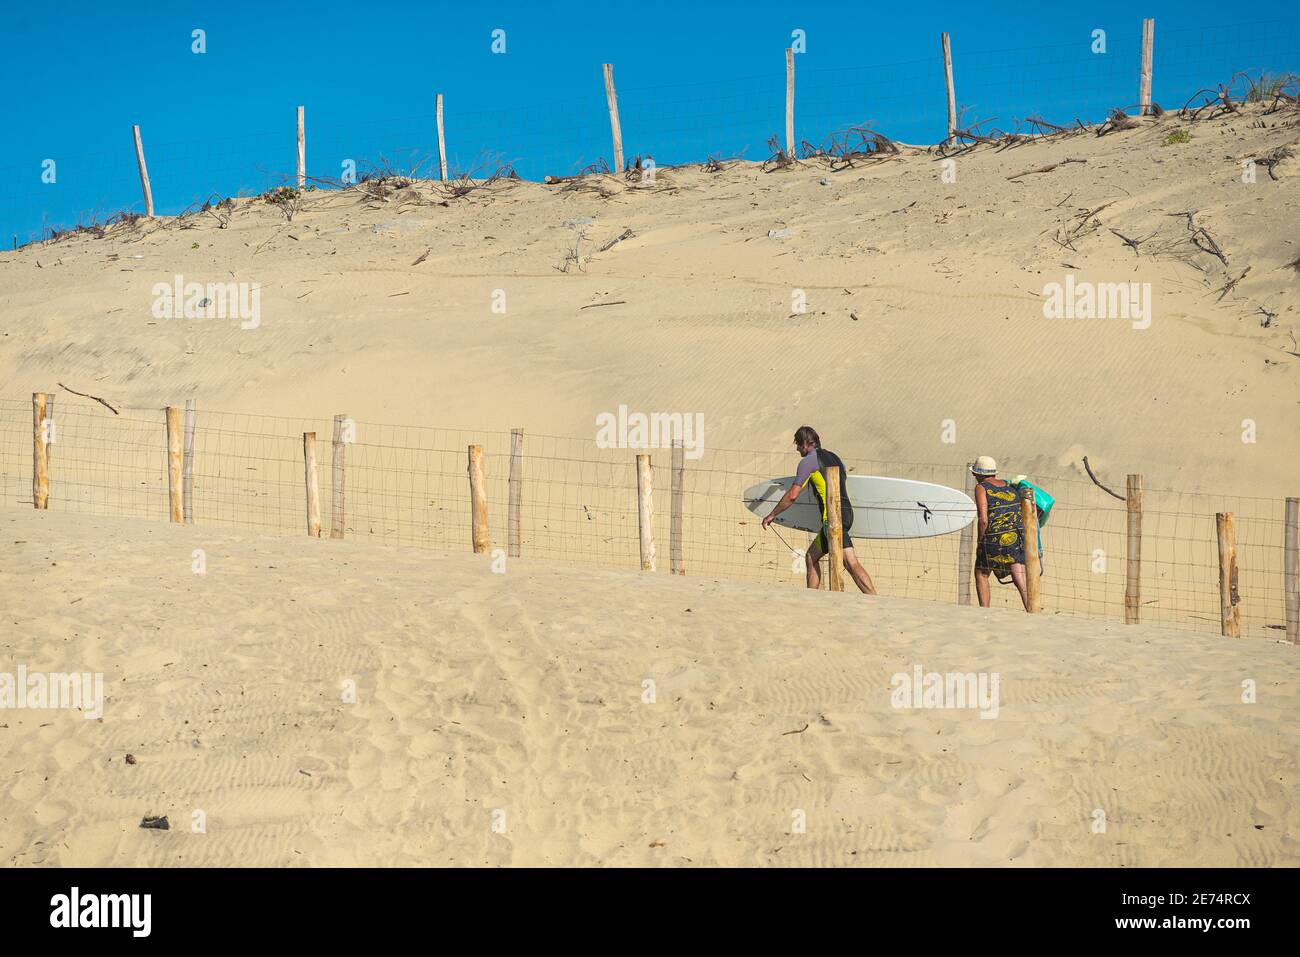 Mann mit Surfbrett verlässt den Strand mit seiner Familie Biscarrosse.Biscarrosse Plage ist ein wichtiges Surfziel am Atlantik Meer in Frankreich Stockfoto